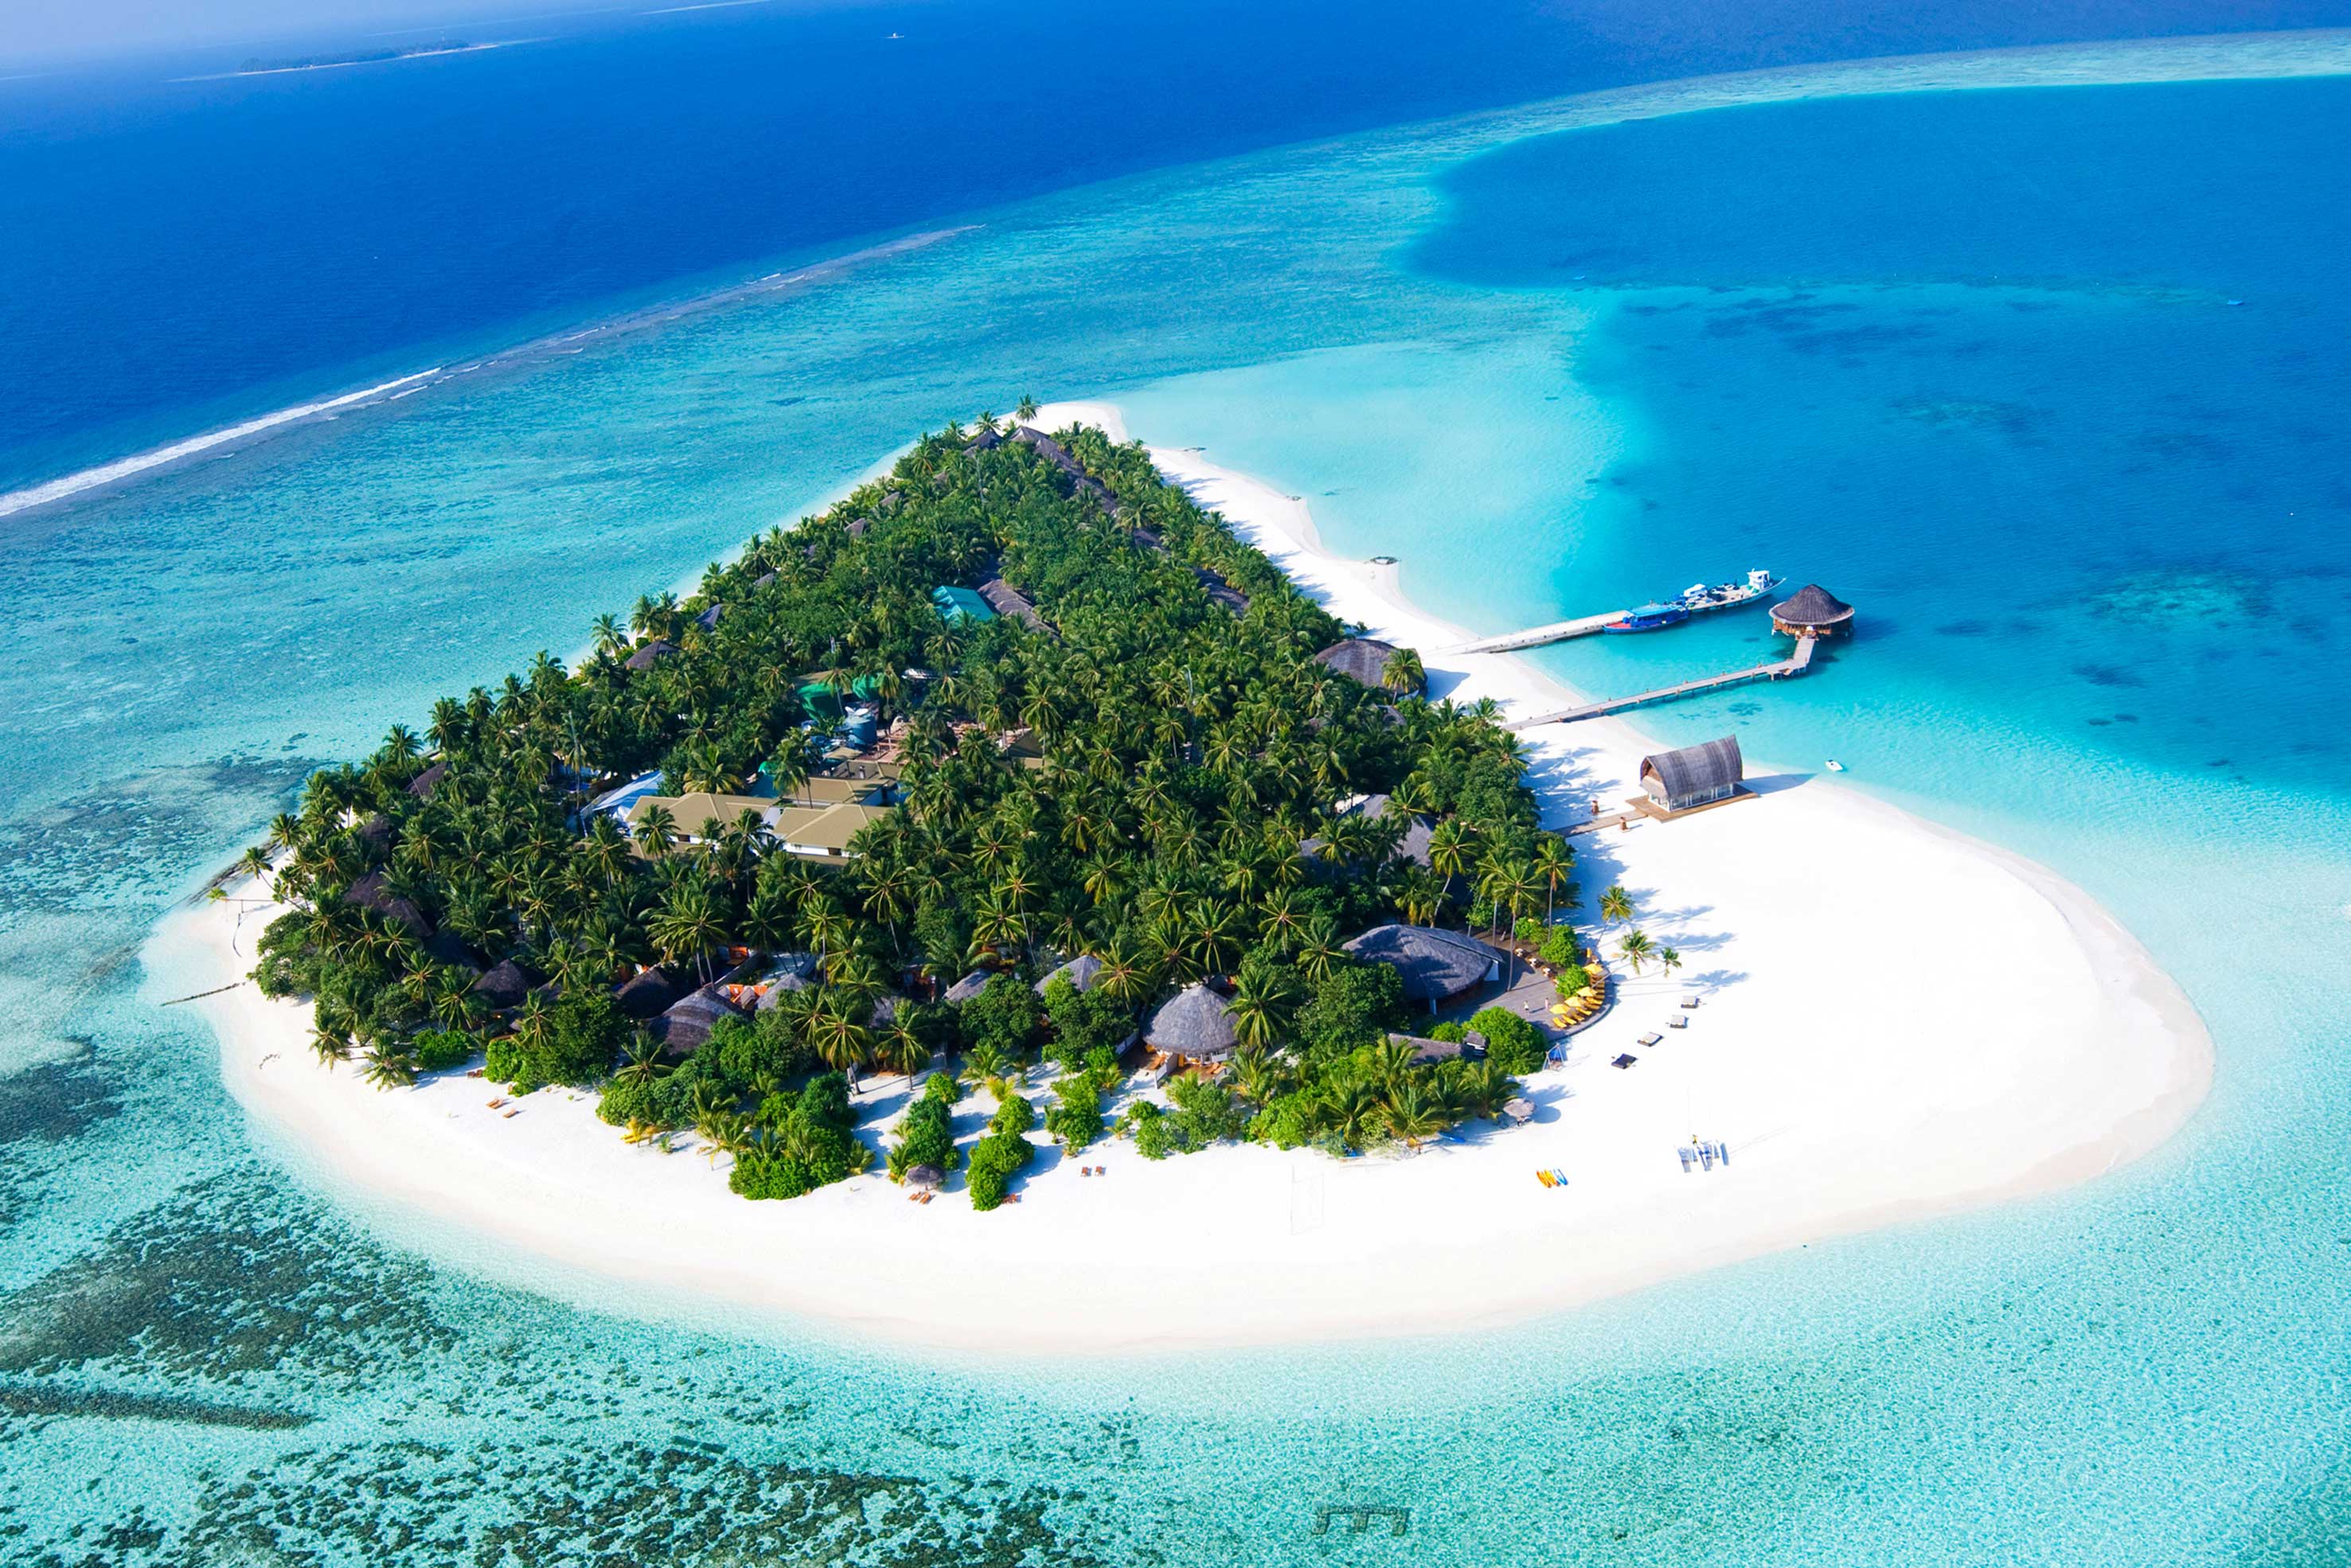 Островок. Северный Мале Атолл Мальдивы. Атолл Лааму Мальдивские острова. Атолл Адду Мальдивы. Остров Ган Мальдивы Лааму Атолл.